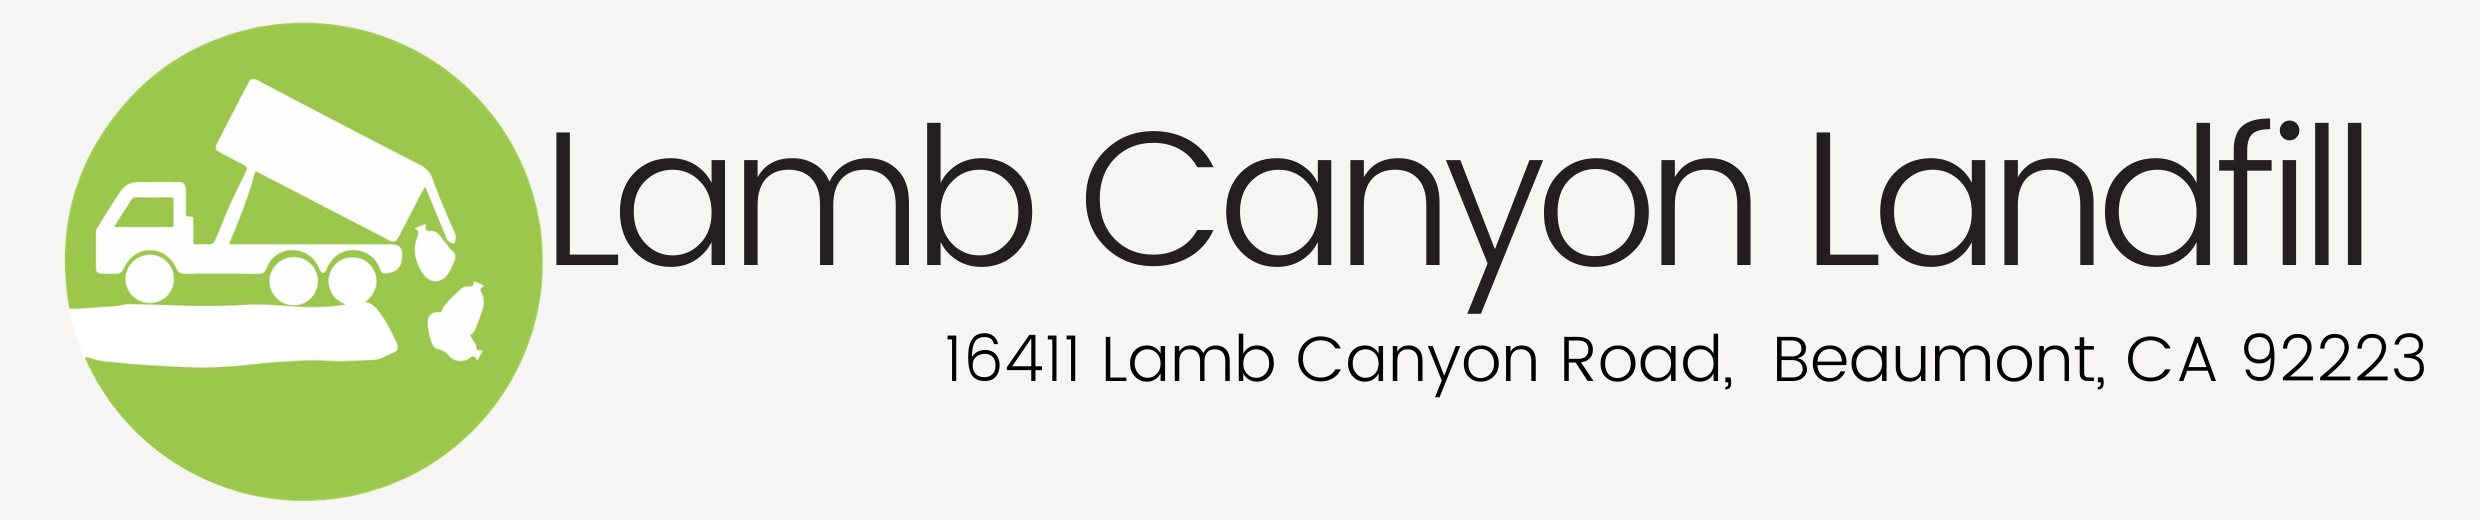 Lamb Canyon Landfill